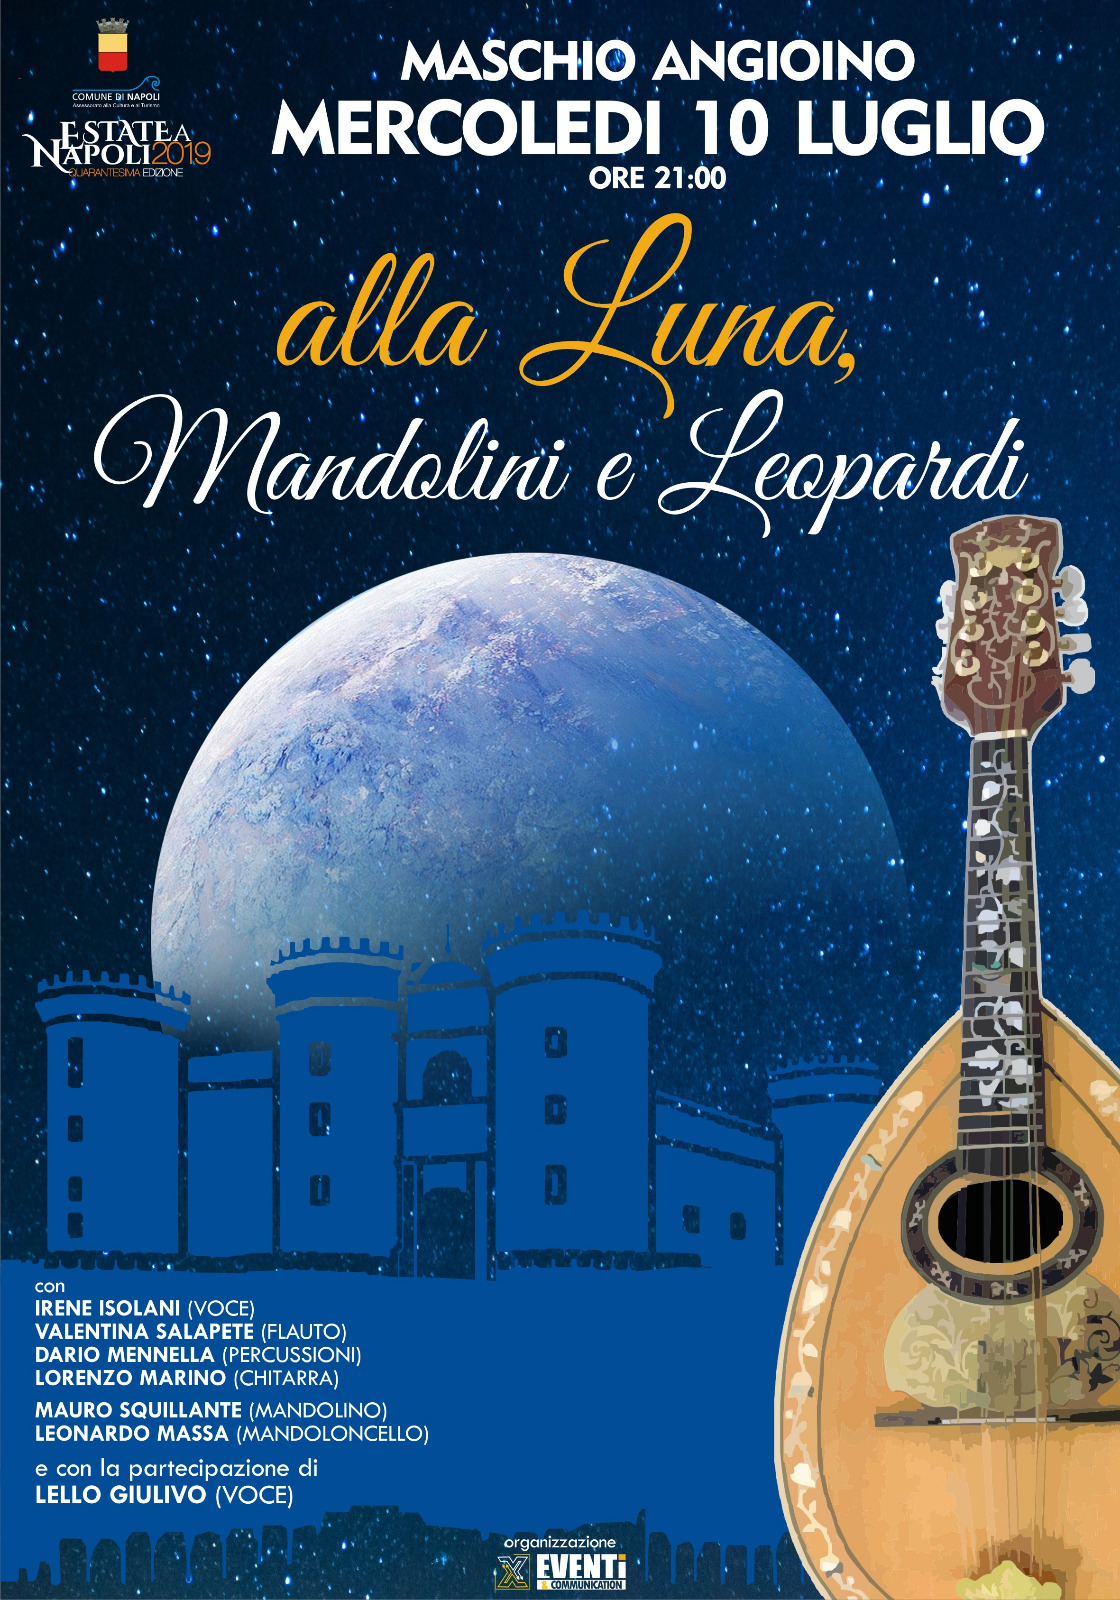 “Alla Luna, Mandolini e Leopardi” Mercoledì 10 luglio alle ore 21:00  Maschio Angioino di Napoli